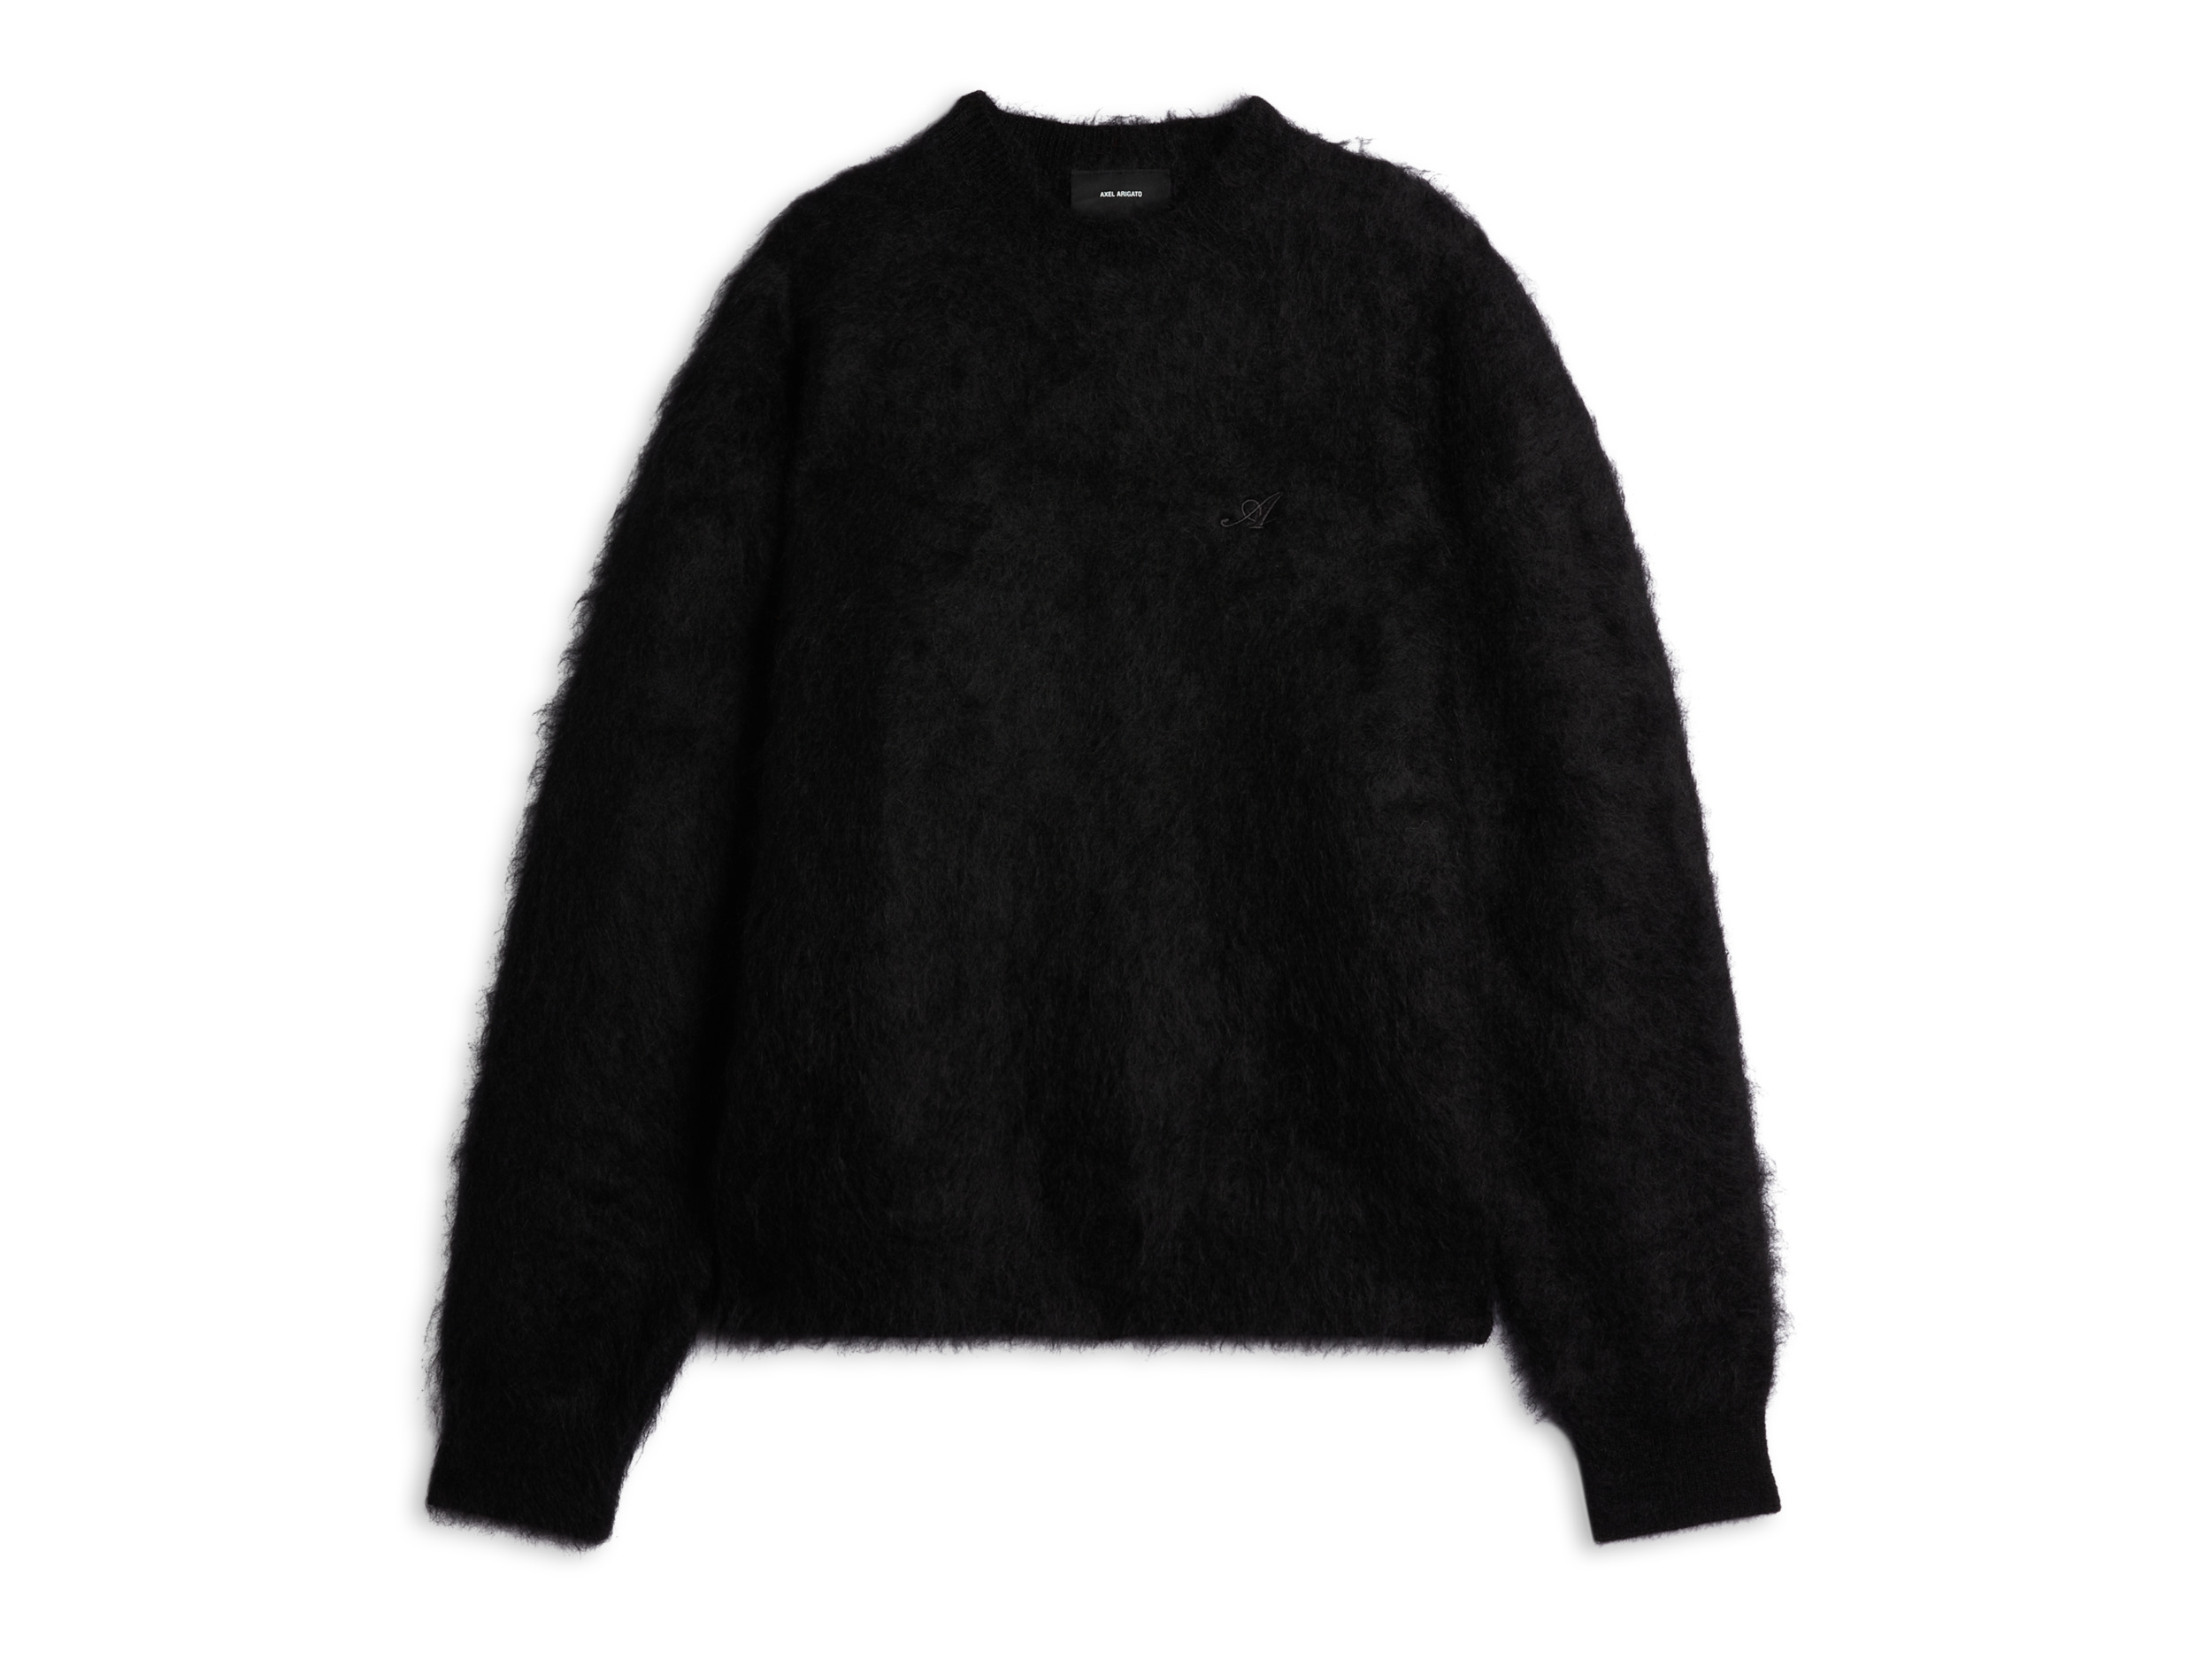 Primary Sweater - 1